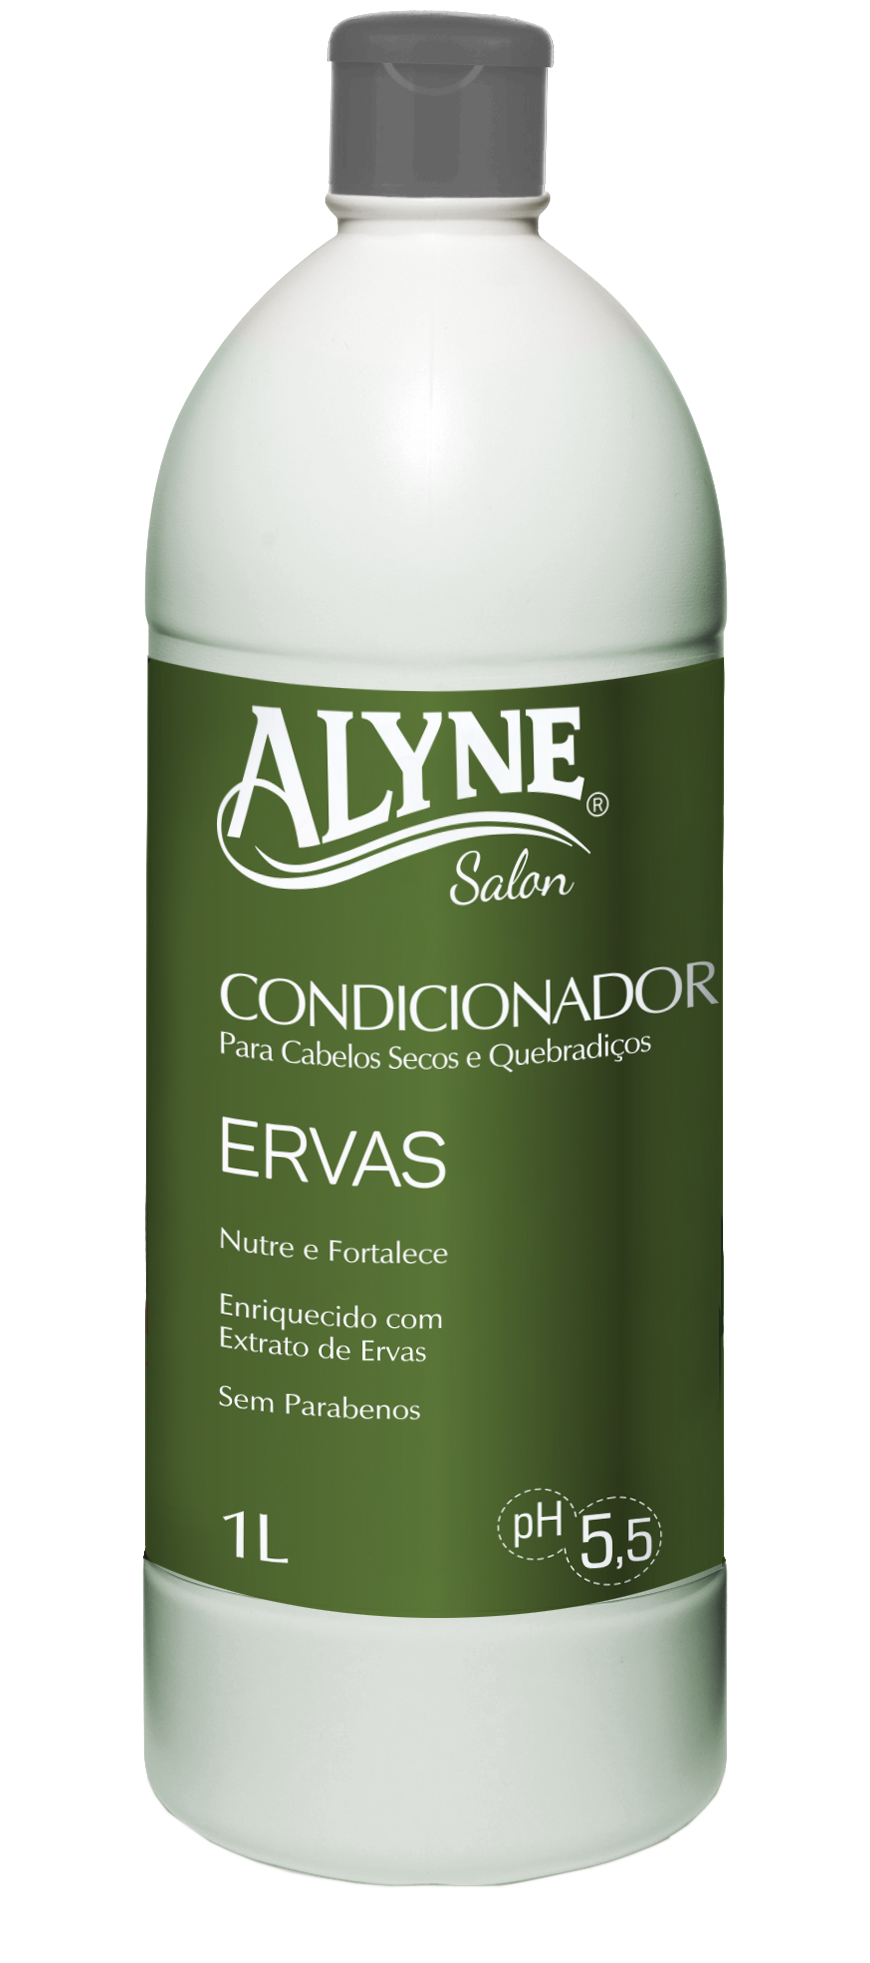 Condicionador Alyne Ervas 1L